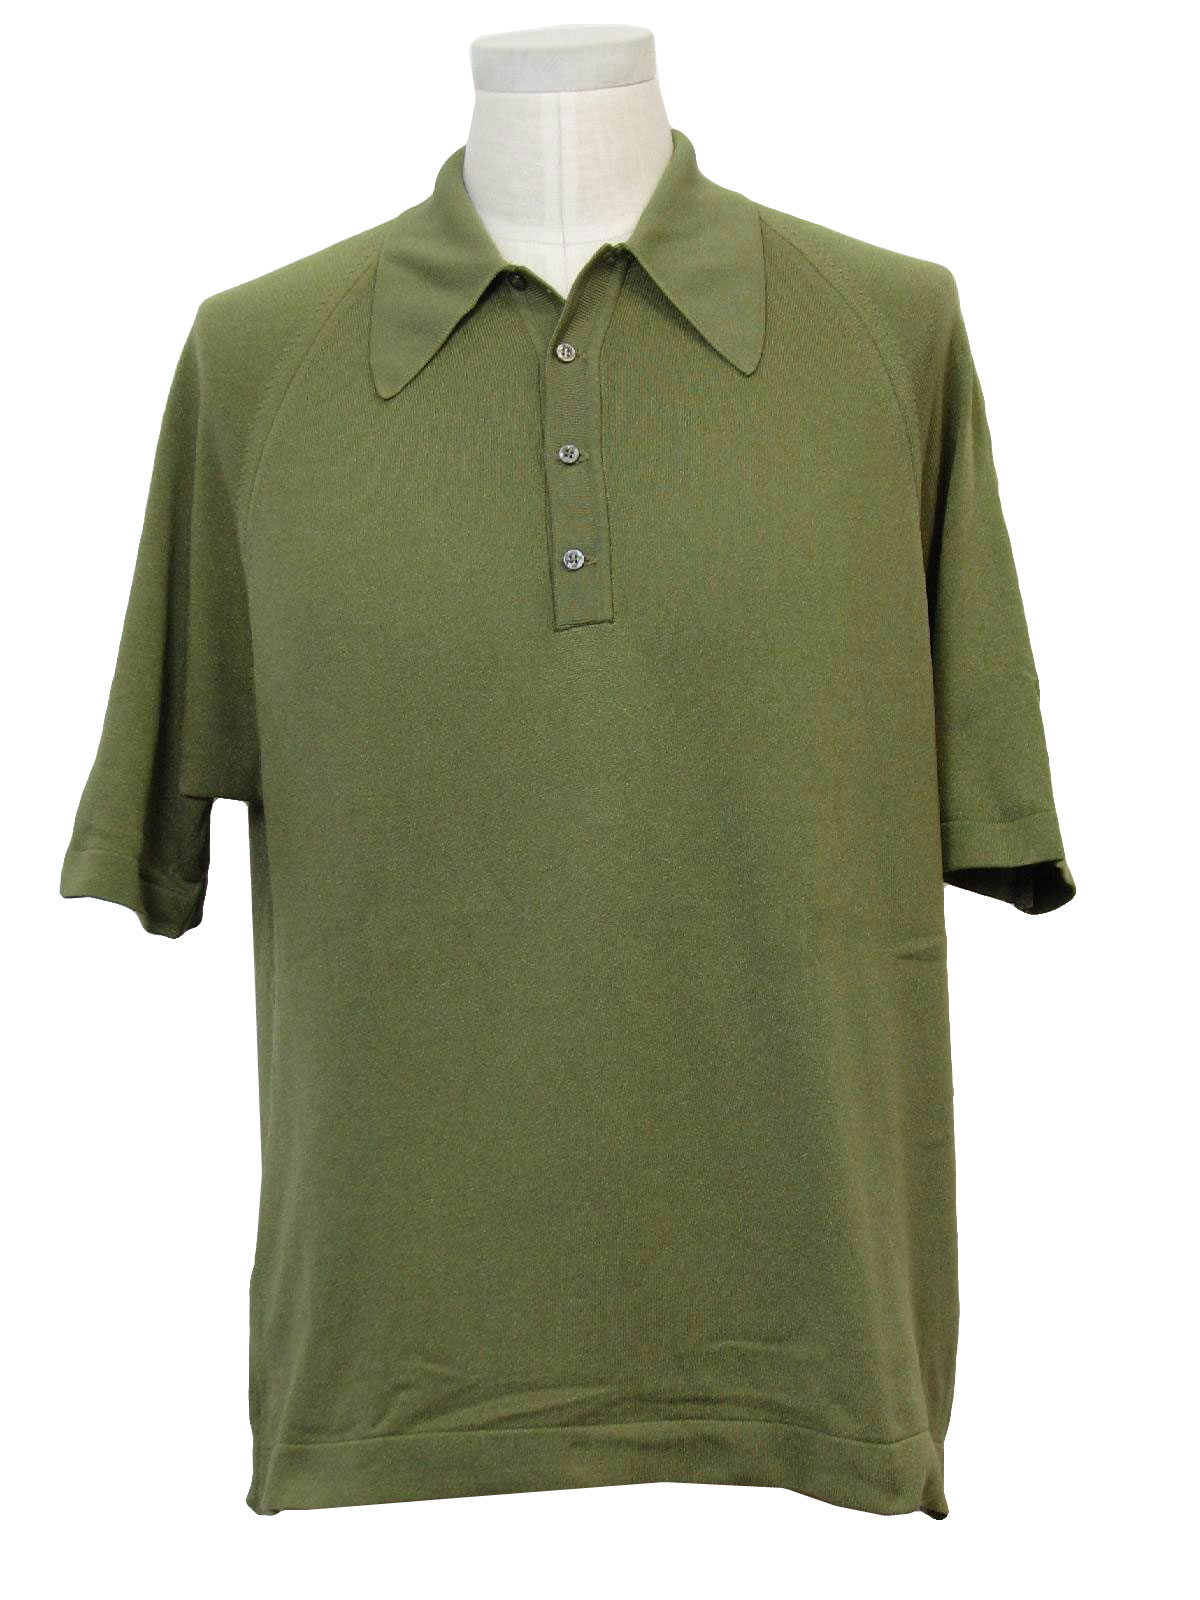 1970s Robert Palmer Knit Shirt: Early 70s -Robert Palmer- Mens green